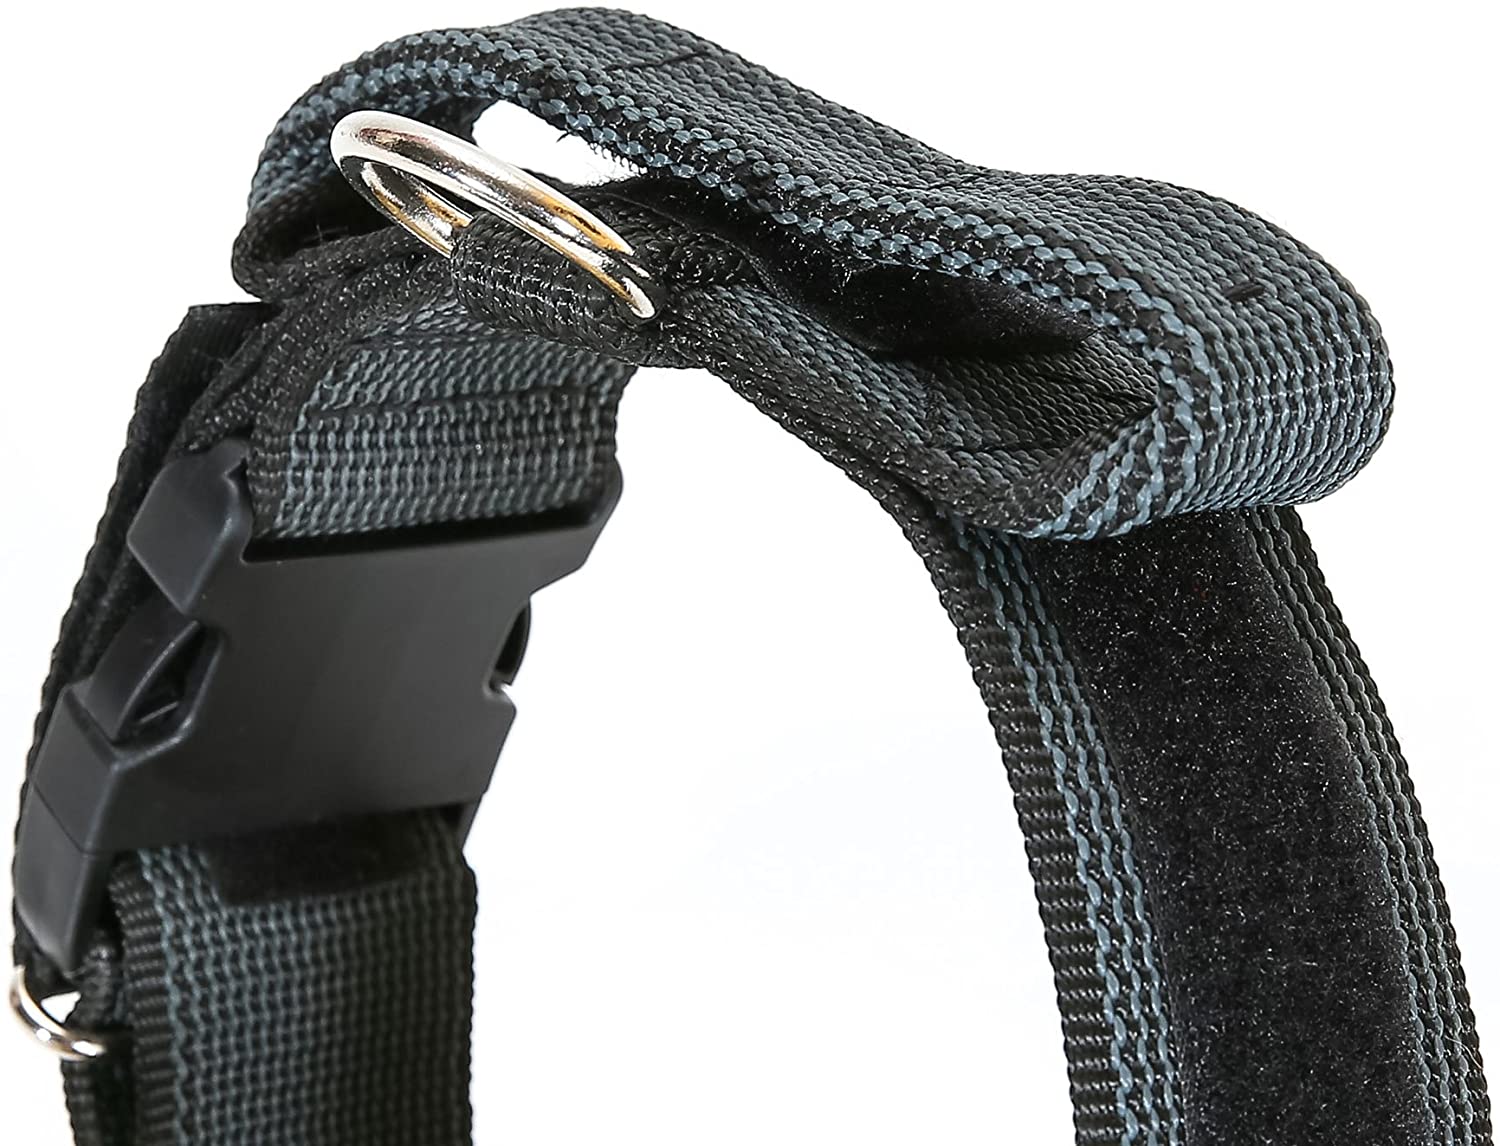  Julius-K9 Collar Color & Gray con la manija, la cerradura de seguridad y el remiendo intercambiables, 50 mm (49-70 cm), Negro-Gris 